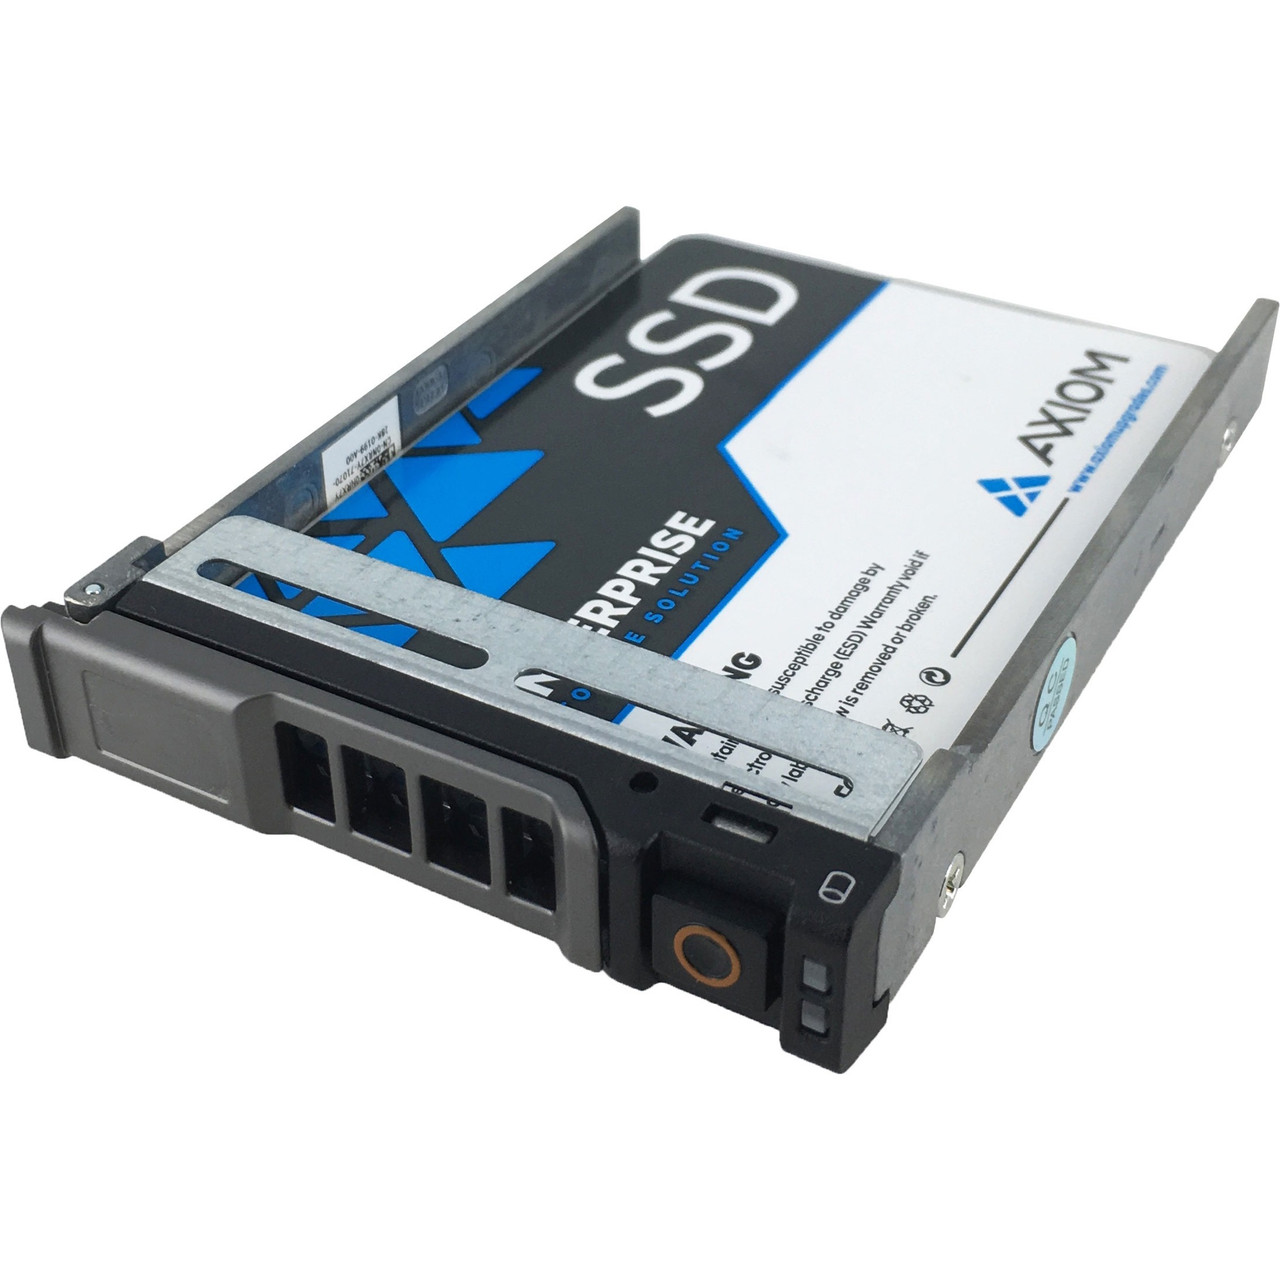 Axiom 480GB Enterprise Pro EP400 2.5-inch Hot-Swap SATA SSD for Dell